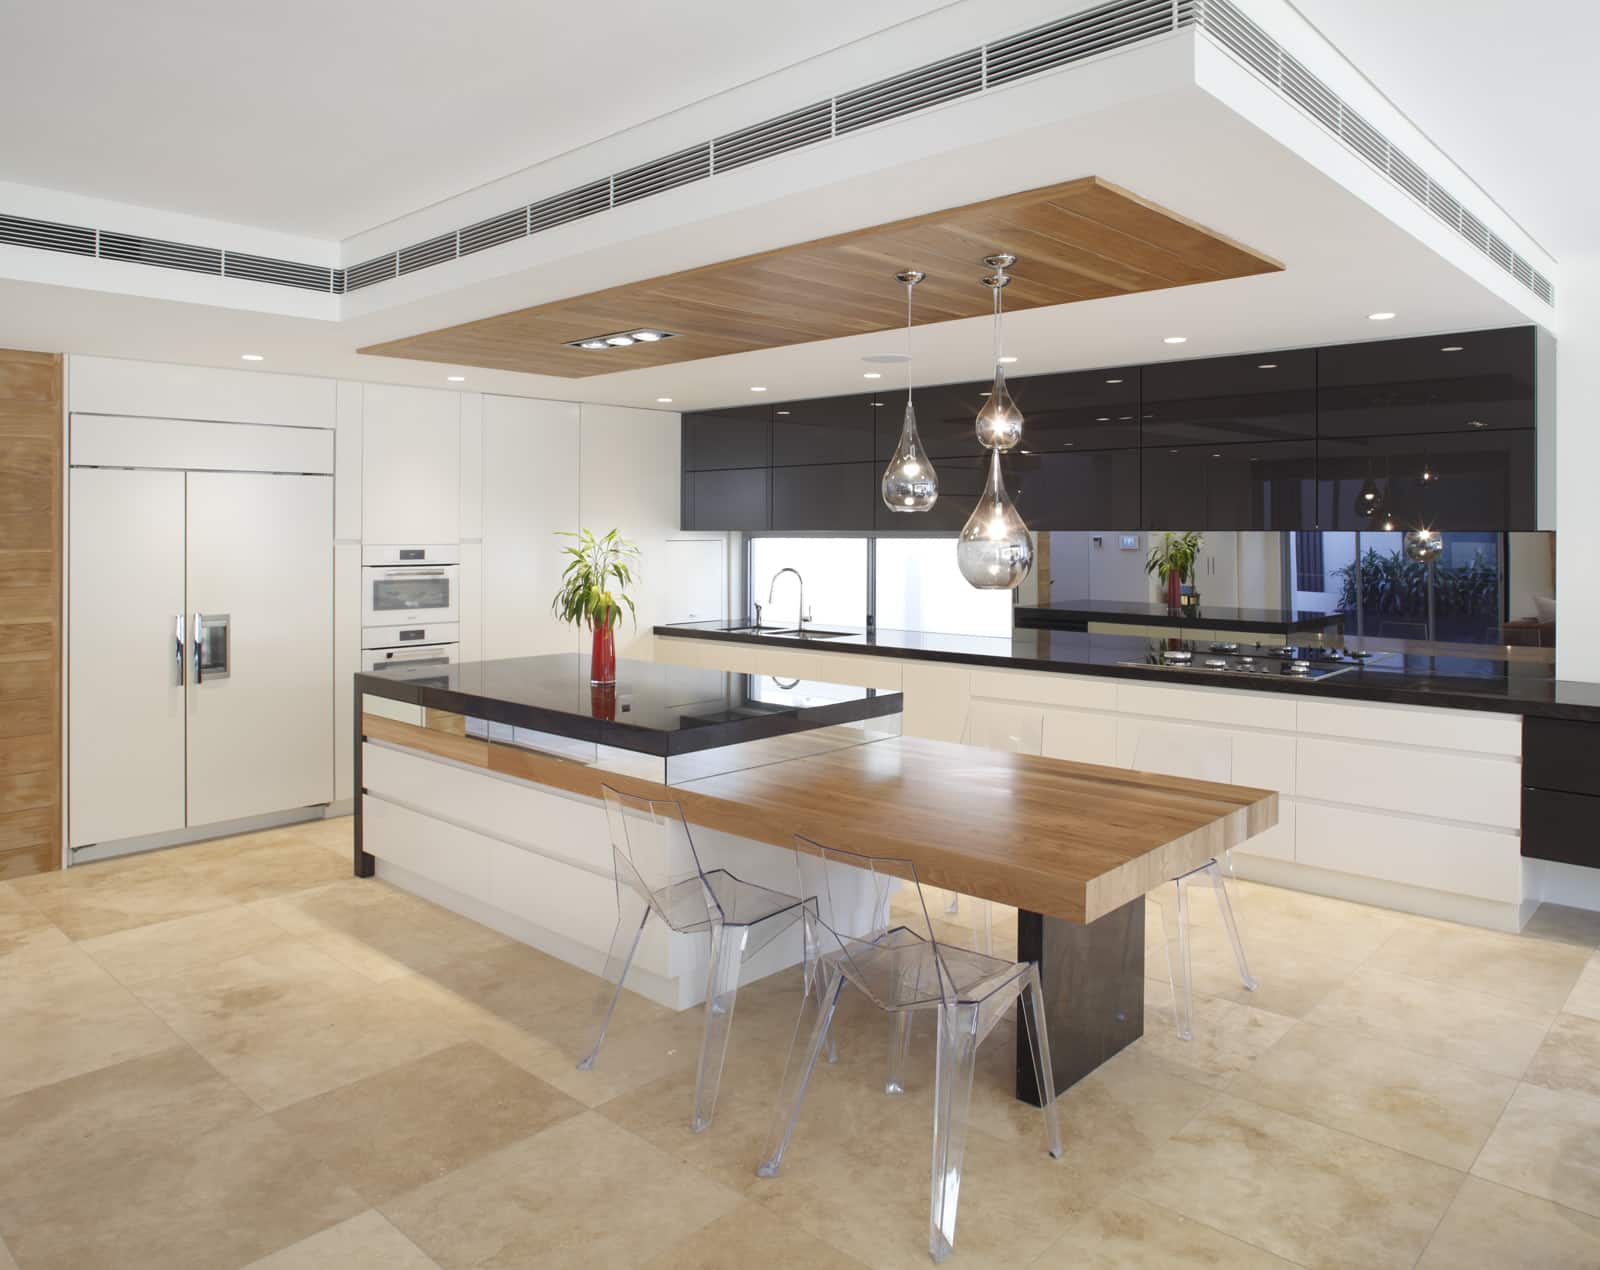  new kitchen designs 2014